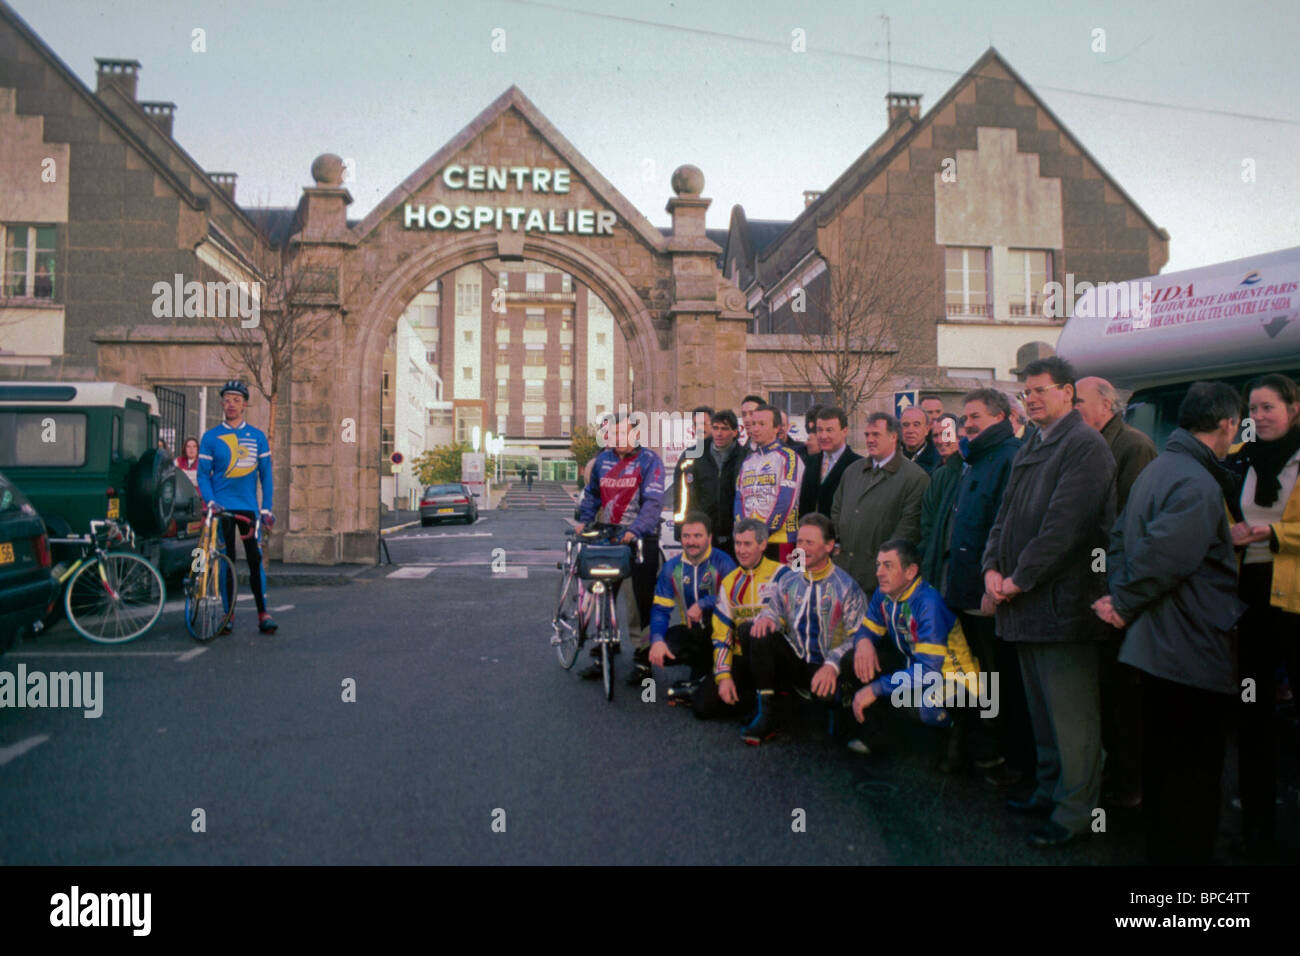 Paris, France - foule nombreuse, audience sportive à AIDS Bike-a-thon Fundfunding Event, Bretagne à Paris Sidaction 'sida 2000' (pour Thierry Rousseau) signe de l'hôpital français, bénévoles aidant la communauté, Banque D'Images